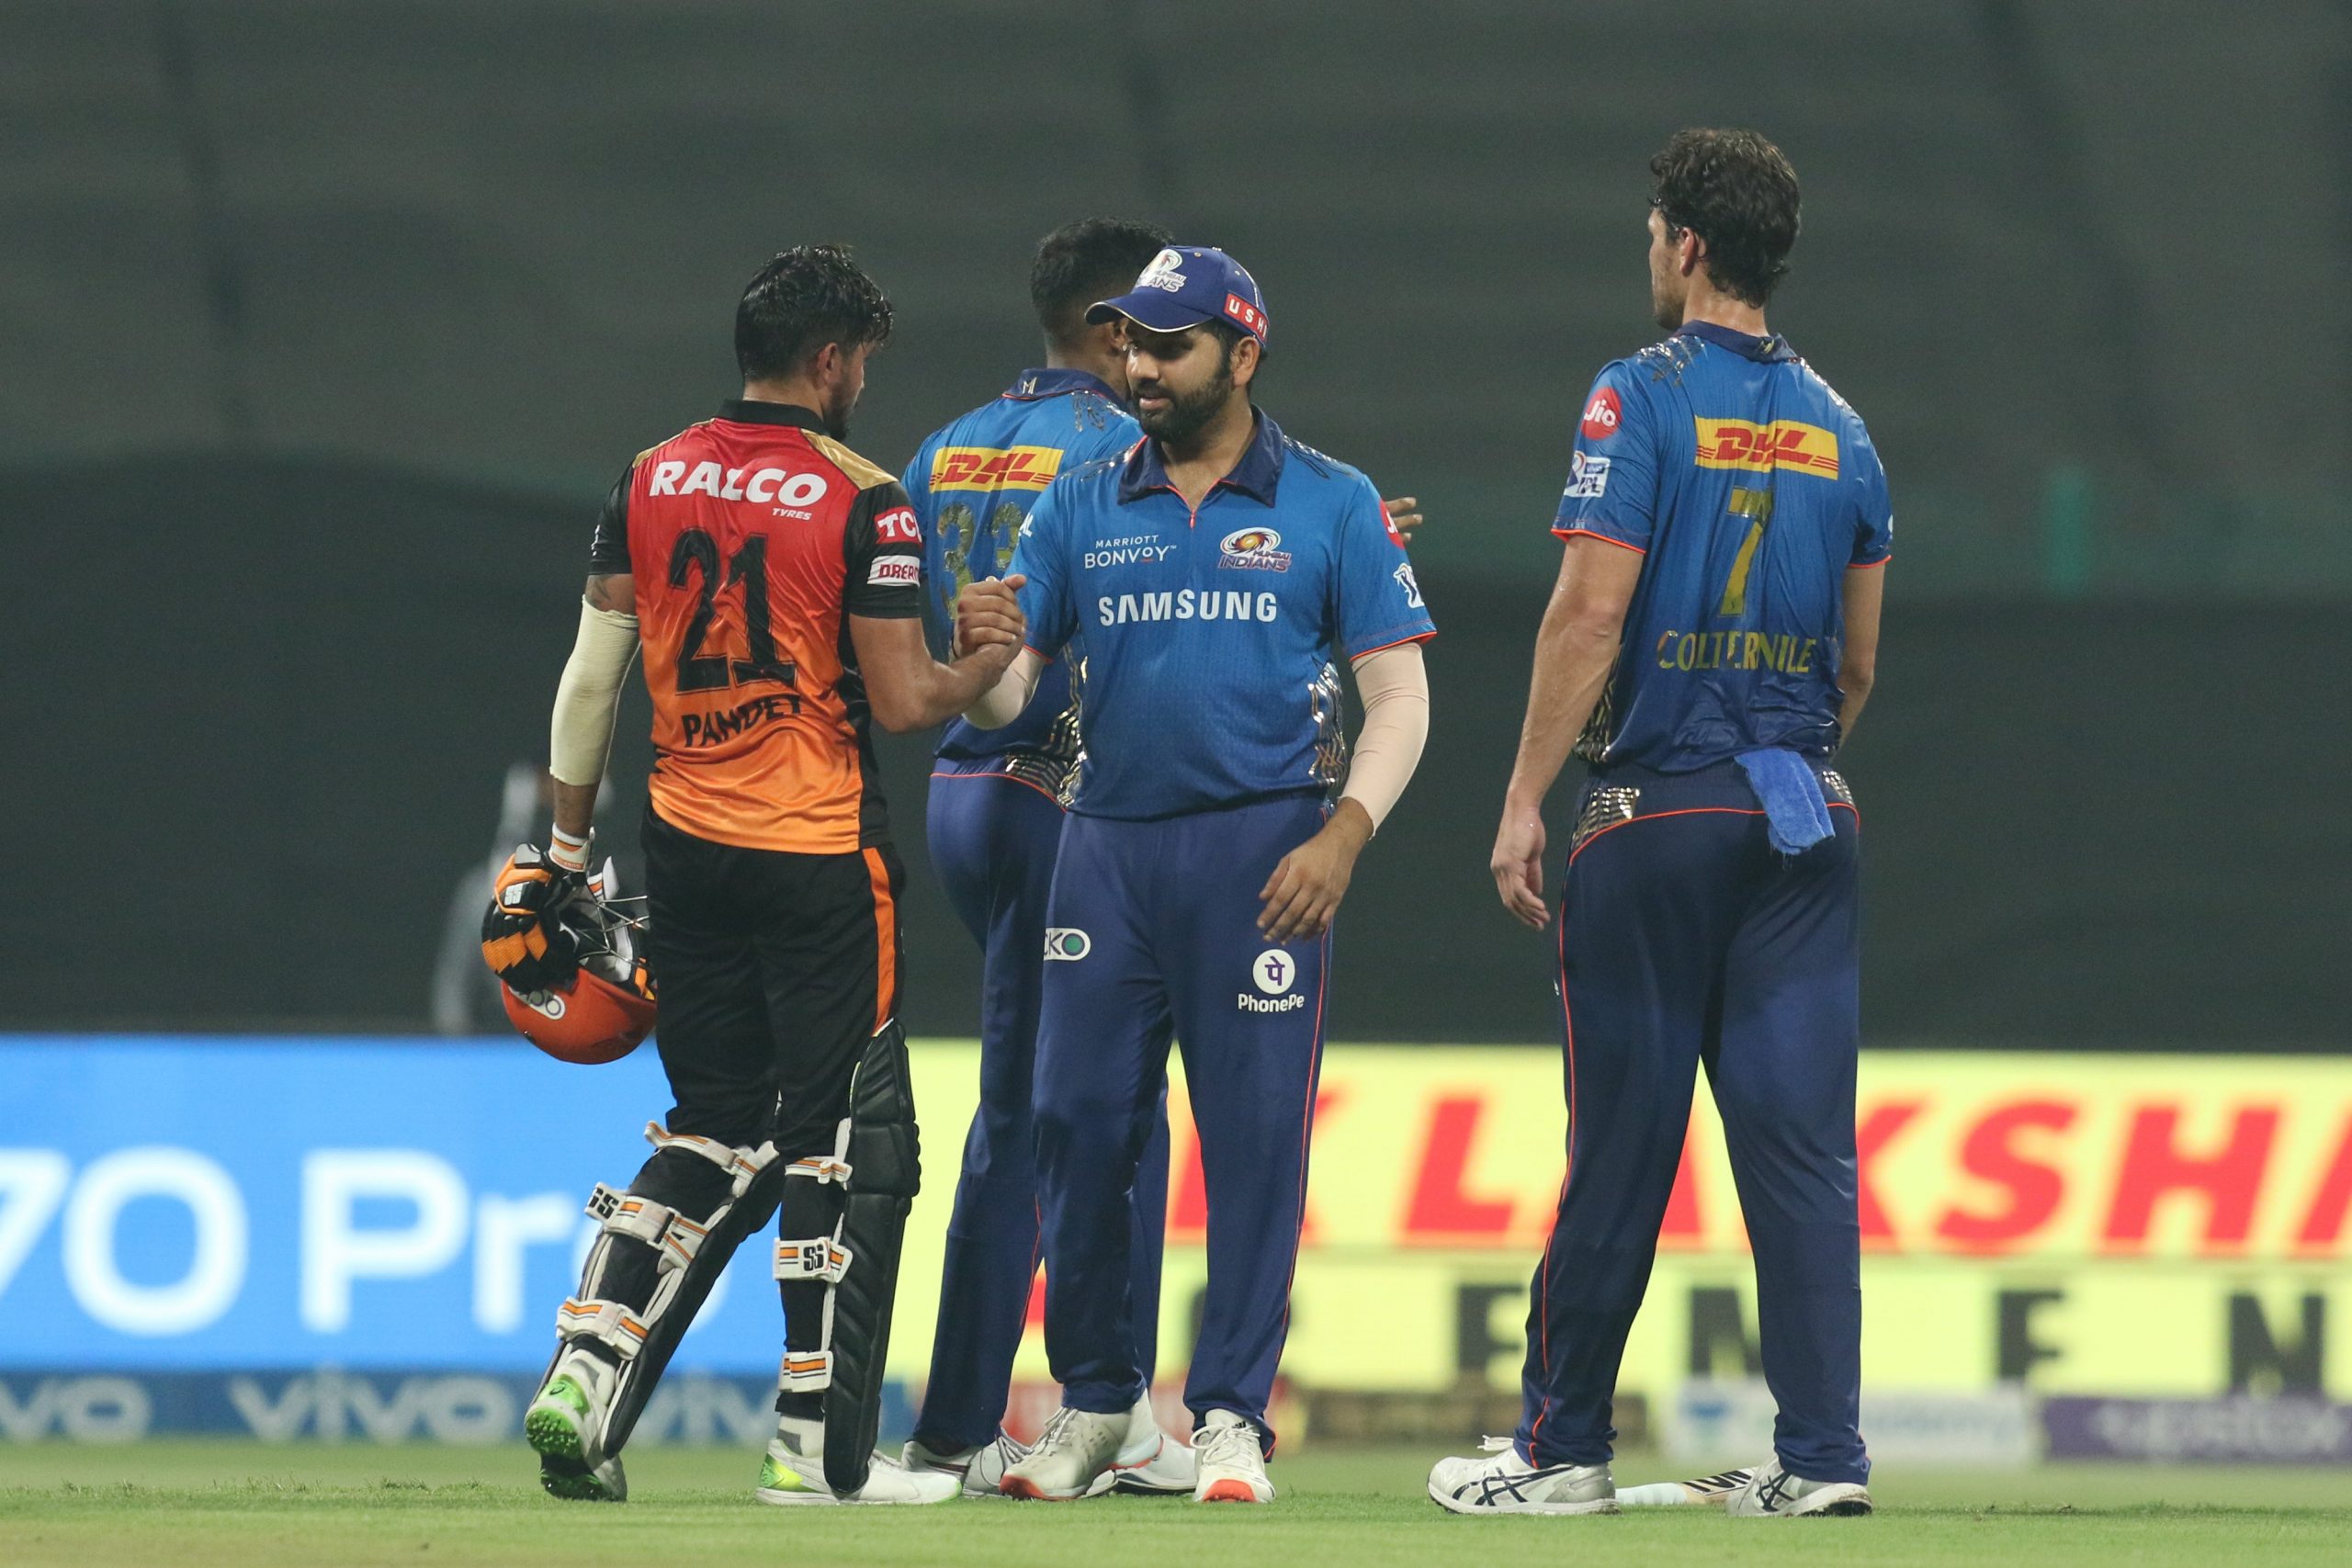 IPL 2021: हैदराबाद को 42 रनों से हराया, जीत के बाद भी मुंबई इंडियंस की हुई हार, प्लेऑफ से बाहर हुई टीम